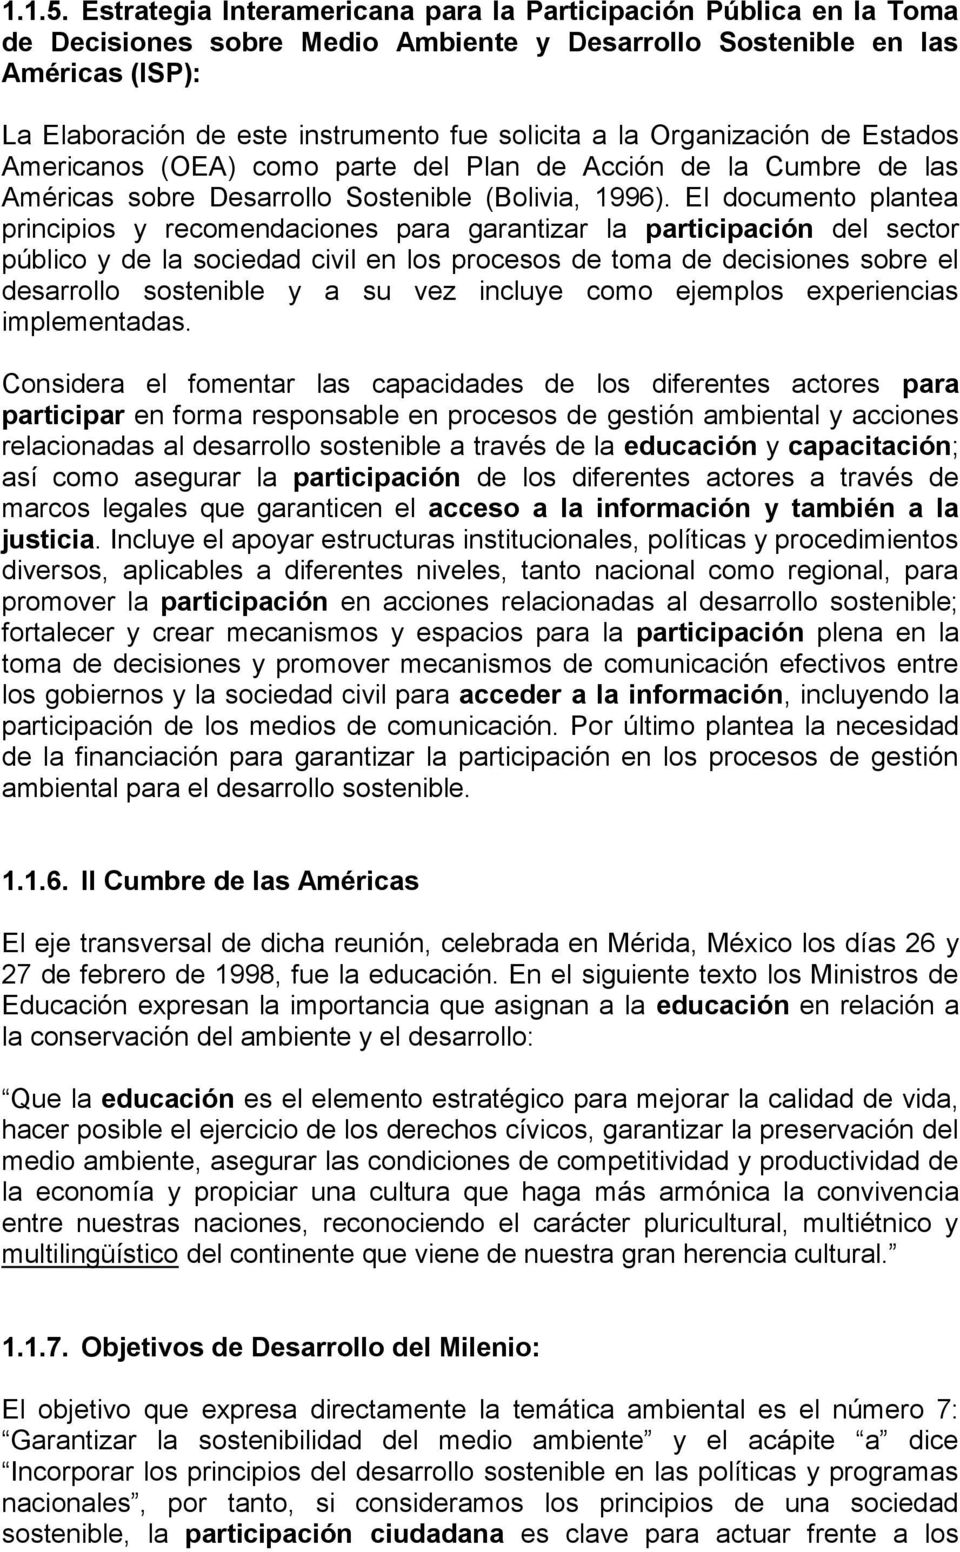 la Organización de Estados Americanos (OEA) como parte del Plan de Acción de la Cumbre de las Américas sobre Desarrollo Sostenible (Bolivia, 1996).